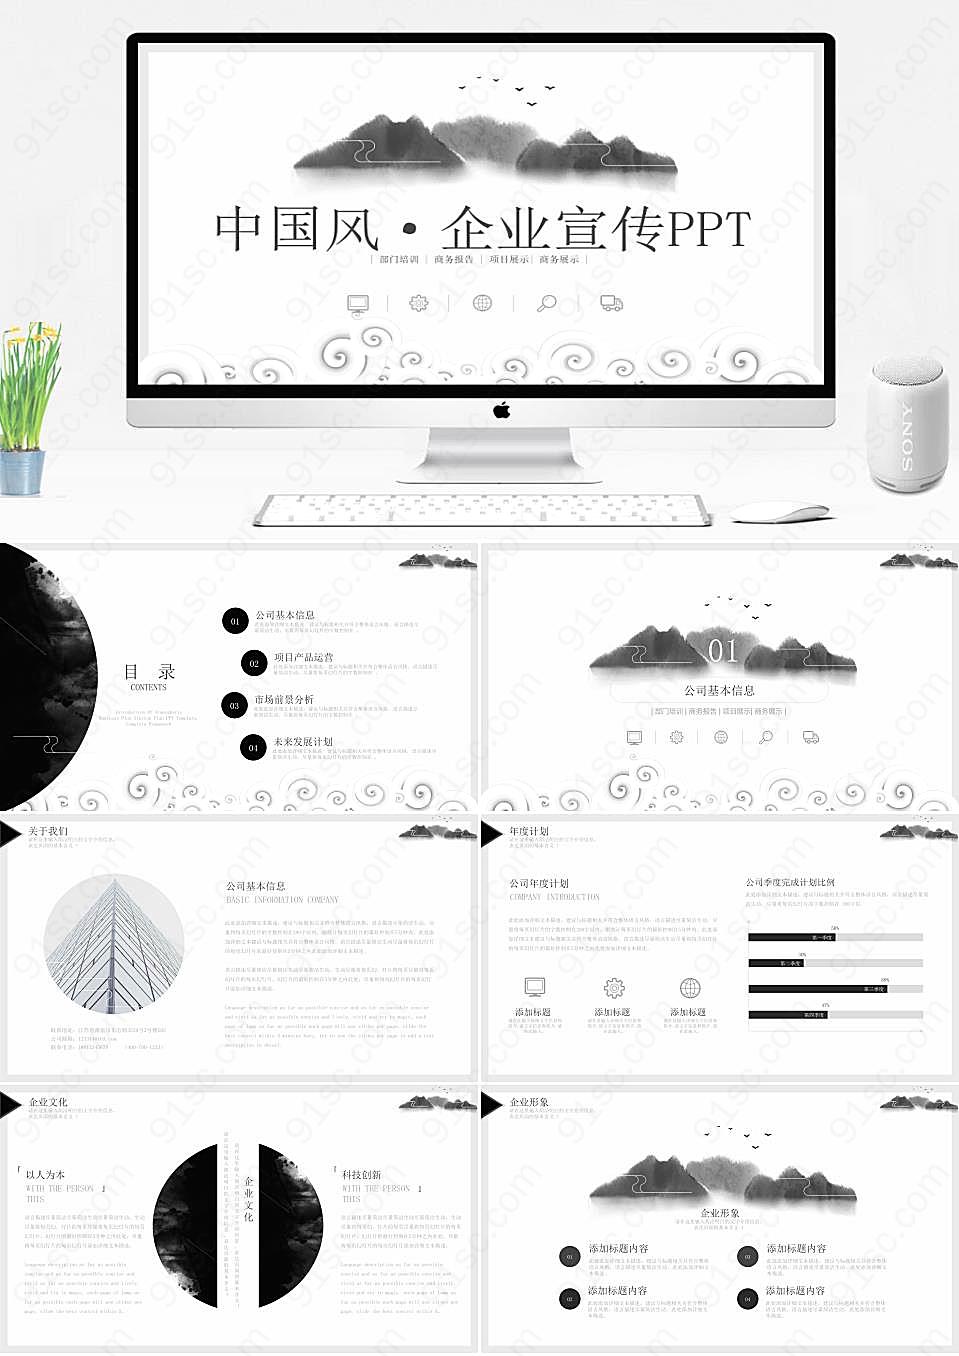 中国山水画元素在企业形象宣传中的运用PPT模板企业宣传下载